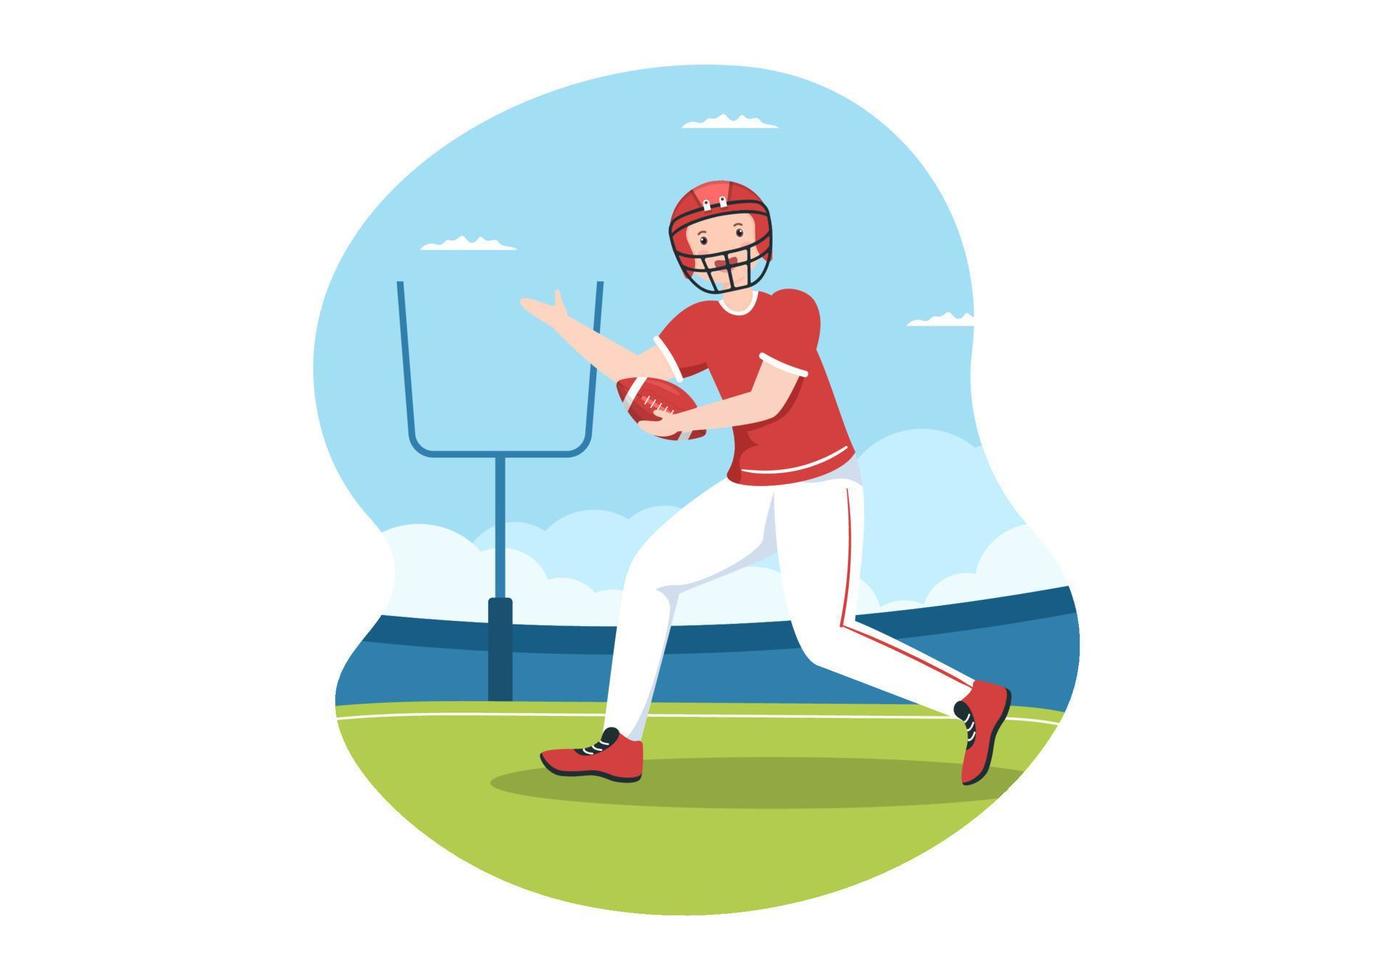 el jugador de fútbol americano con el juego usa una pelota de forma ovalada y es marrón en el campo ilustración plana de dibujos animados dibujados a mano vector